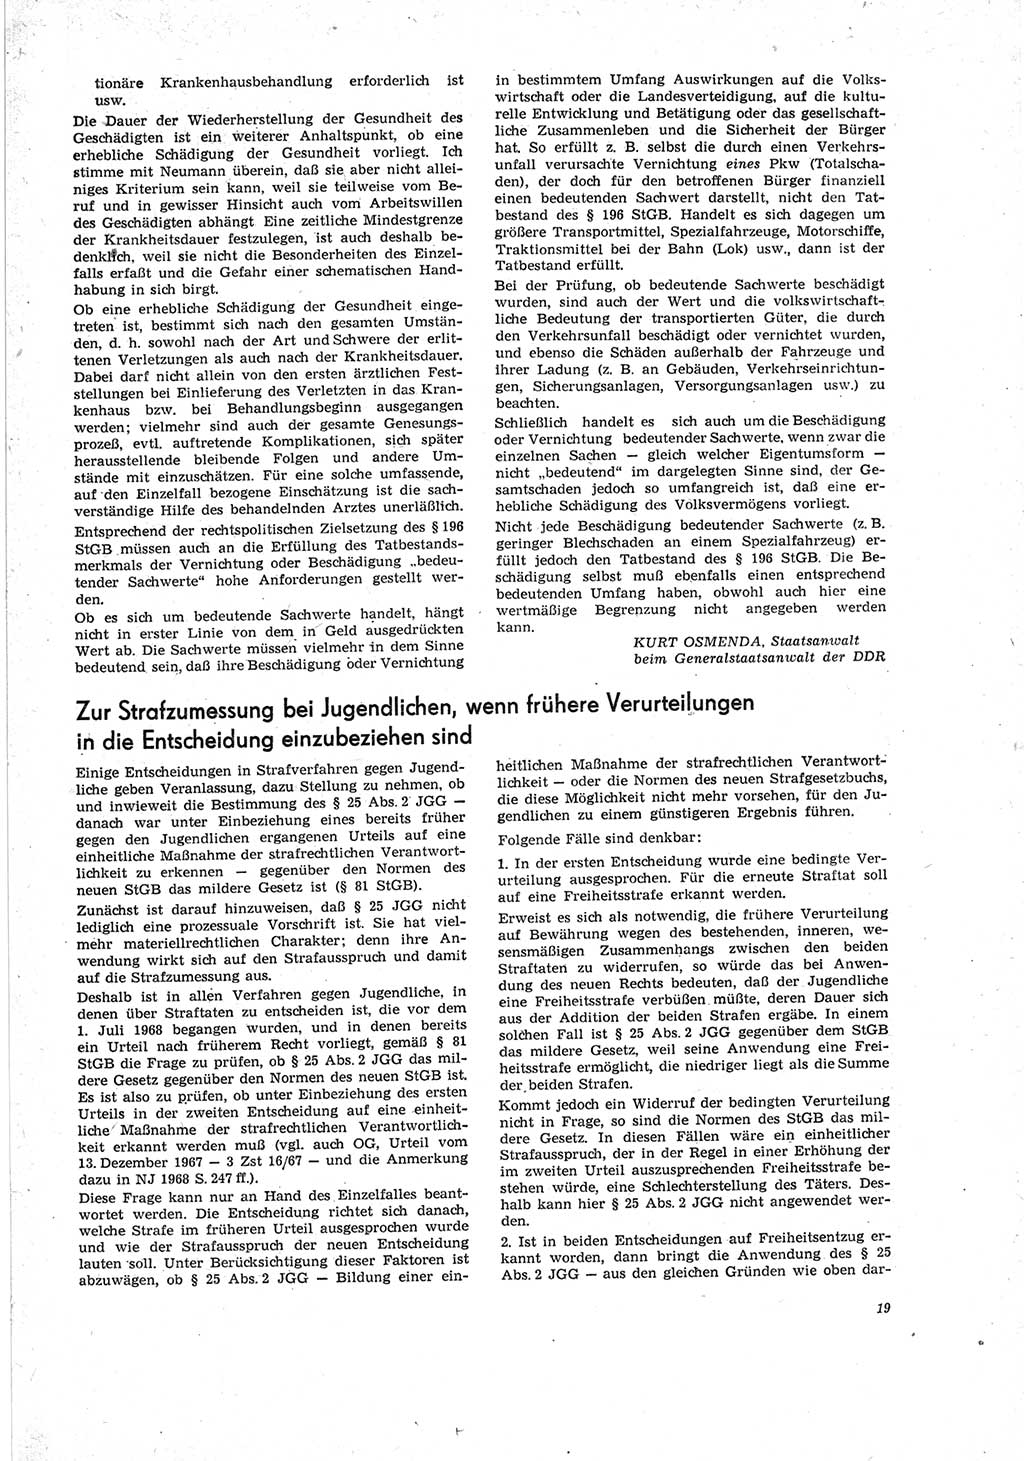 Neue Justiz (NJ), Zeitschrift für Recht und Rechtswissenschaft [Deutsche Demokratische Republik (DDR)], 23. Jahrgang 1969, Seite 19 (NJ DDR 1969, S. 19)